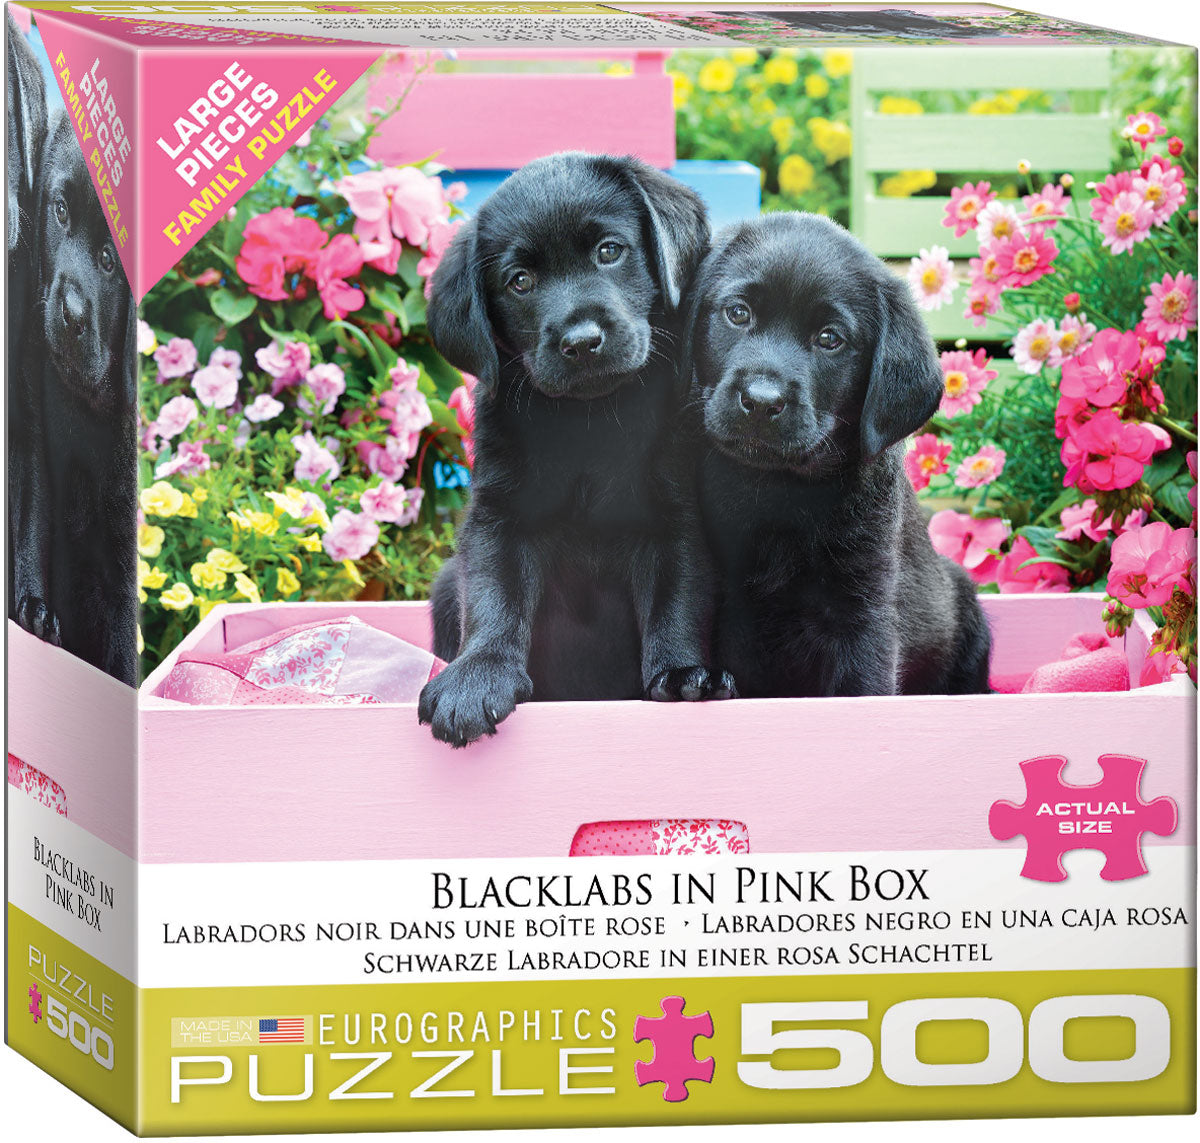 Labradors noirs dans une boîte rose